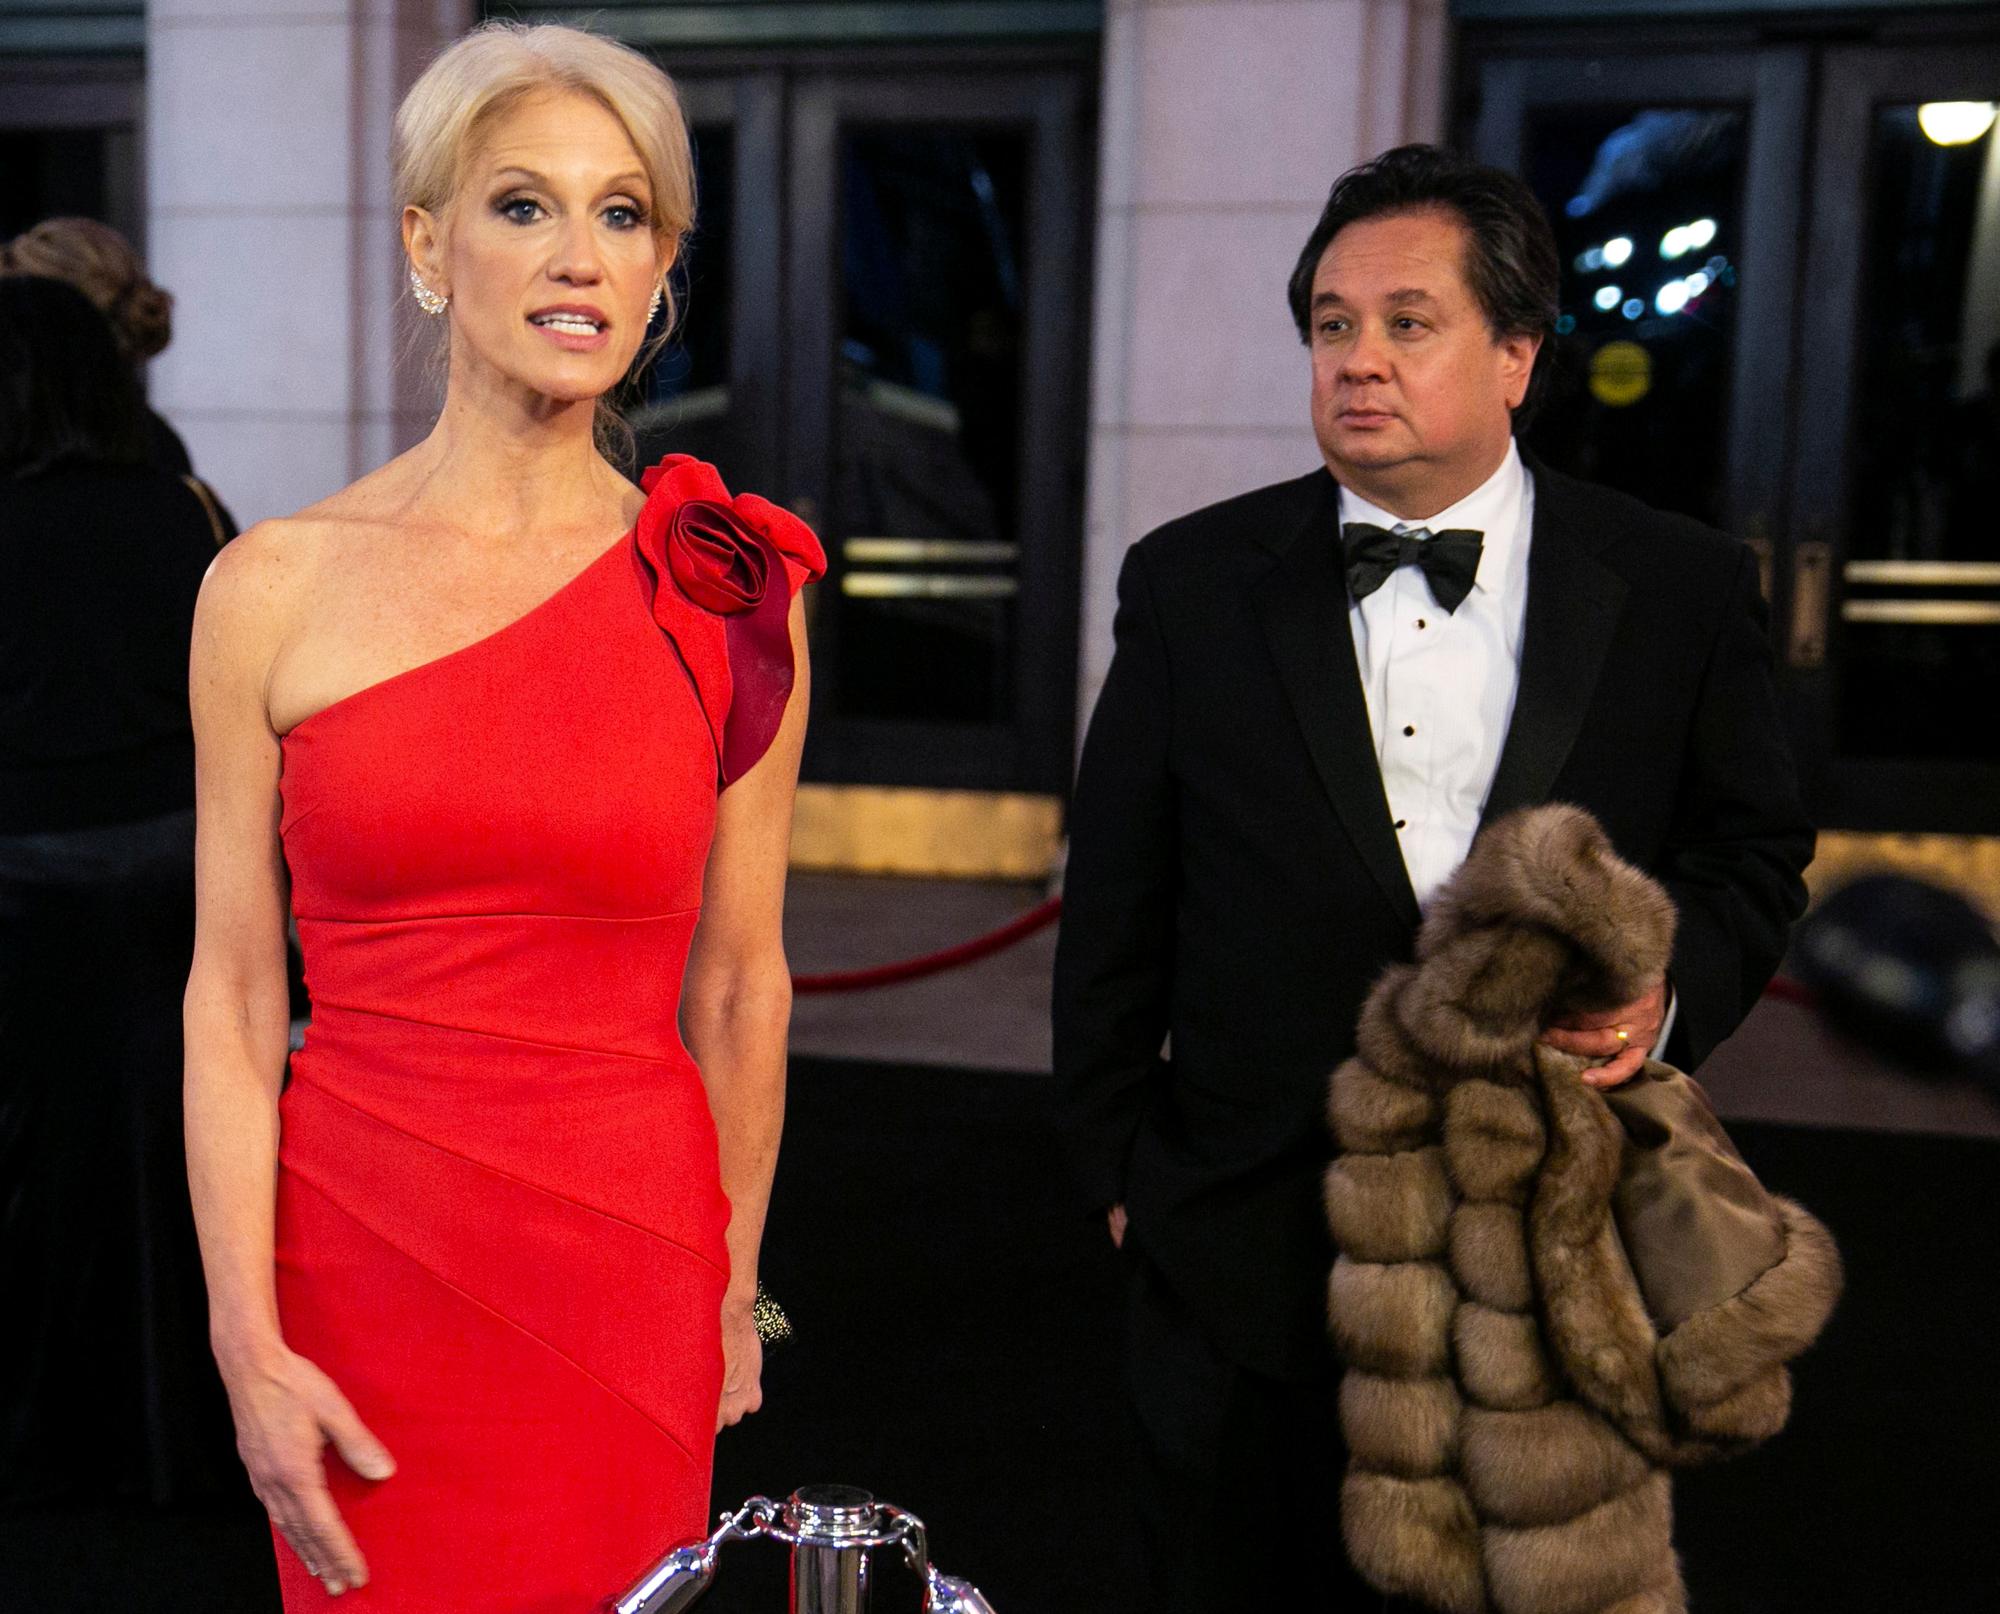 L'avocat George Conway tient le manteau de sa femme Kellyanne, conseillère du président Trump. Washington DC, le 19 janvier 2017. [Reuters - Joshua Roberts]